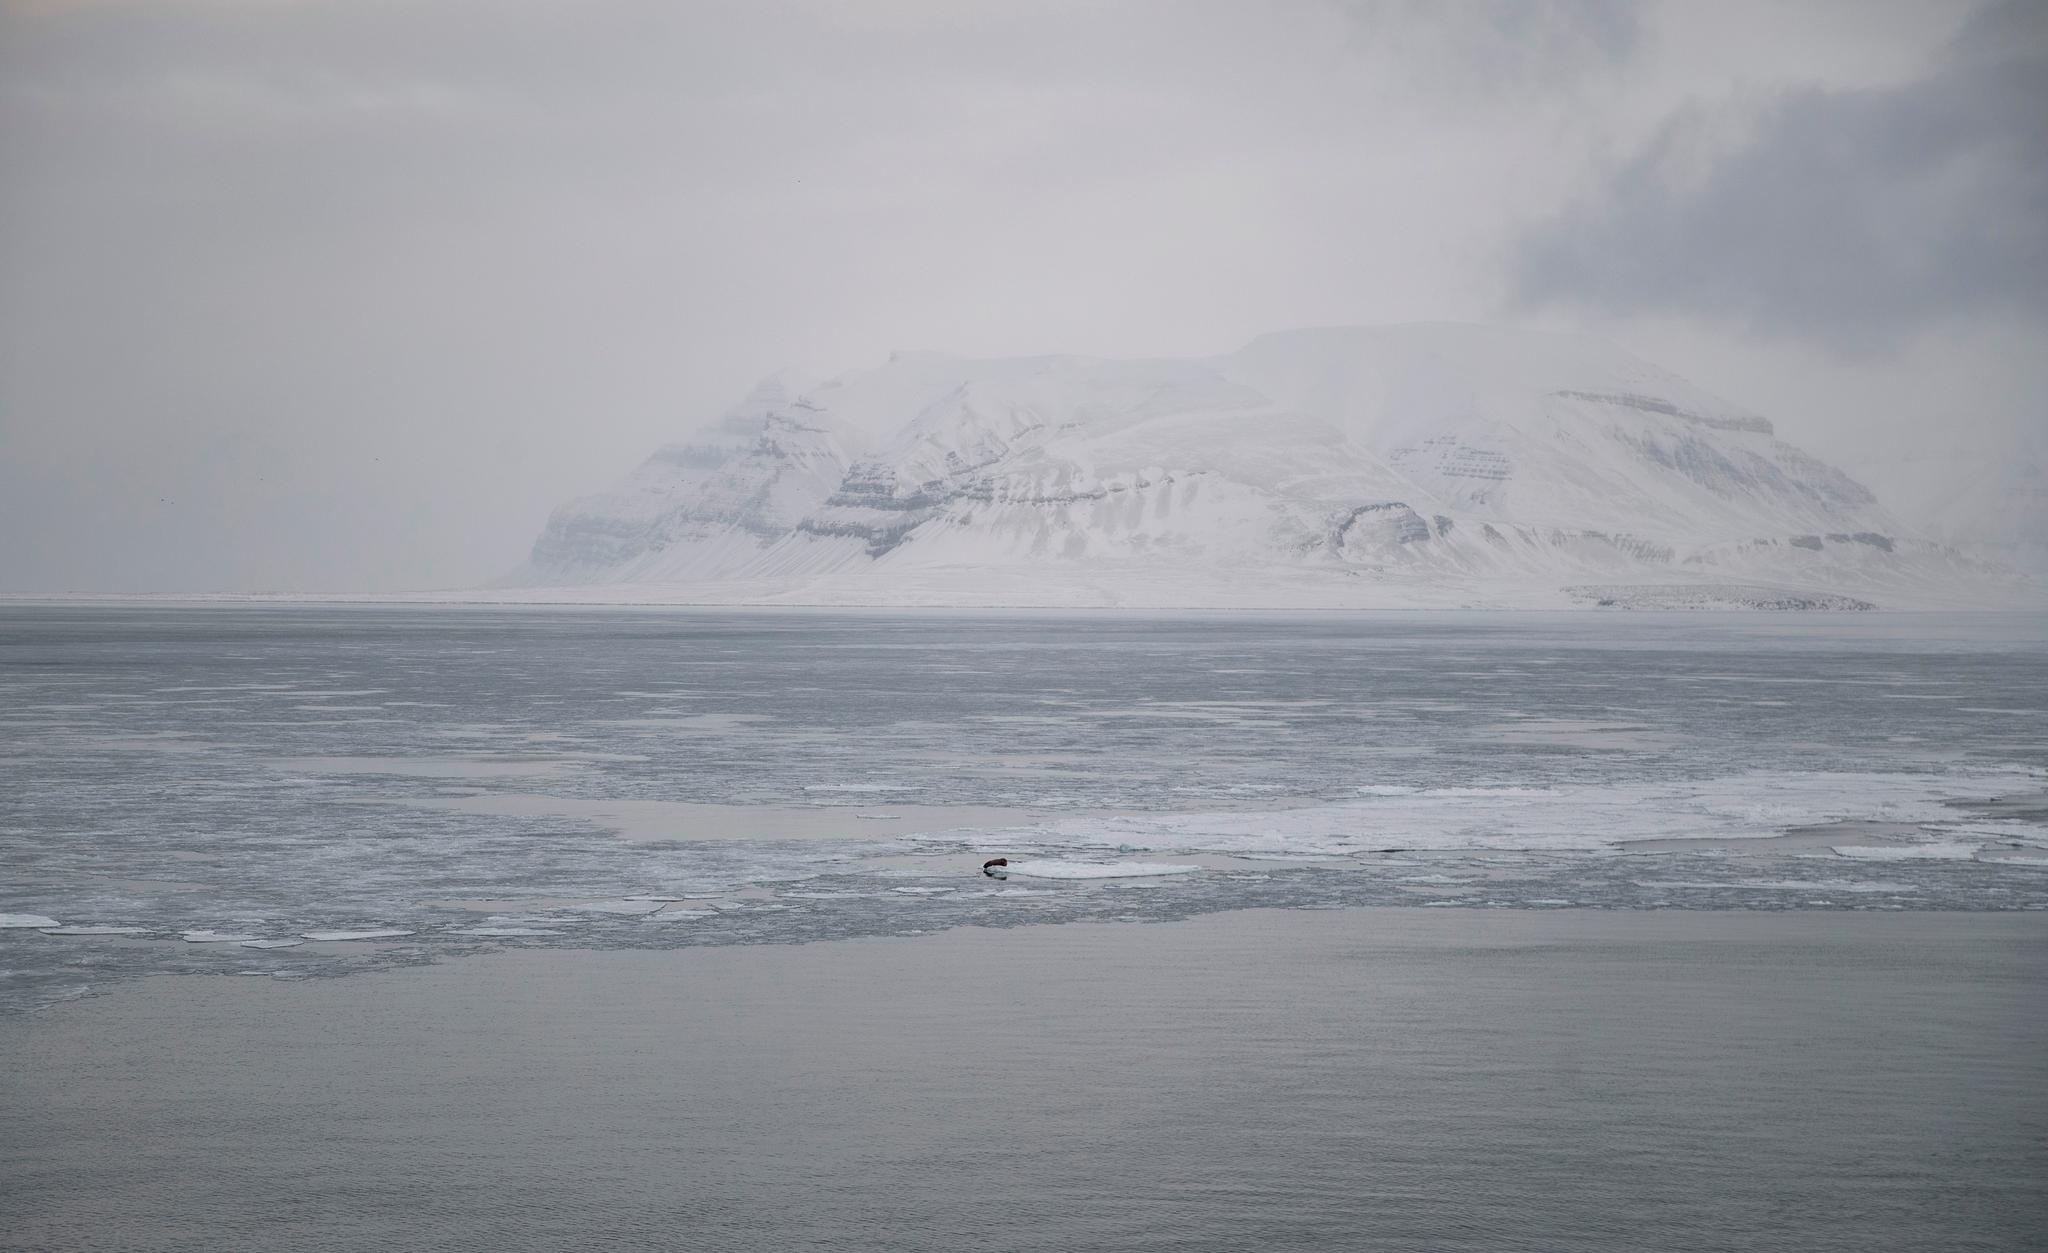 Iskantsonen er definert som området der det er 30 prosents sannsynlighet for at isen dekker mer enn 15 prosent av havoverflaten i april måned. April er valgt fordi isen når lengst sør denne måneden. Her fra Svalbard. 